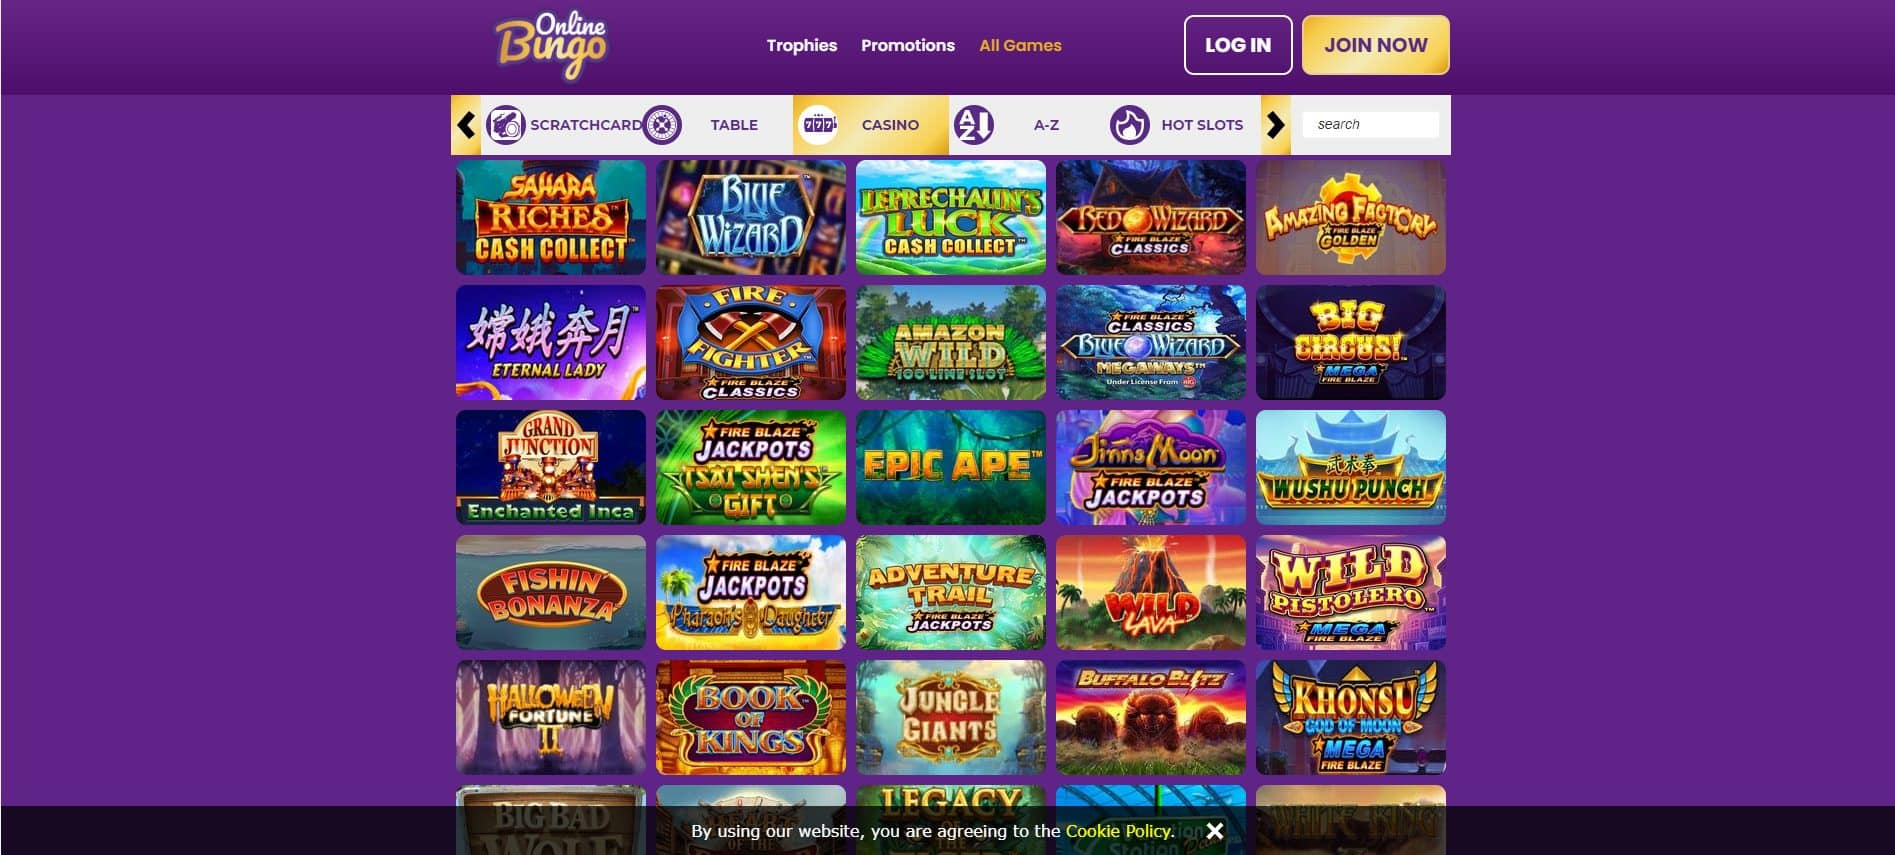 Online Bingo Casino Table Games